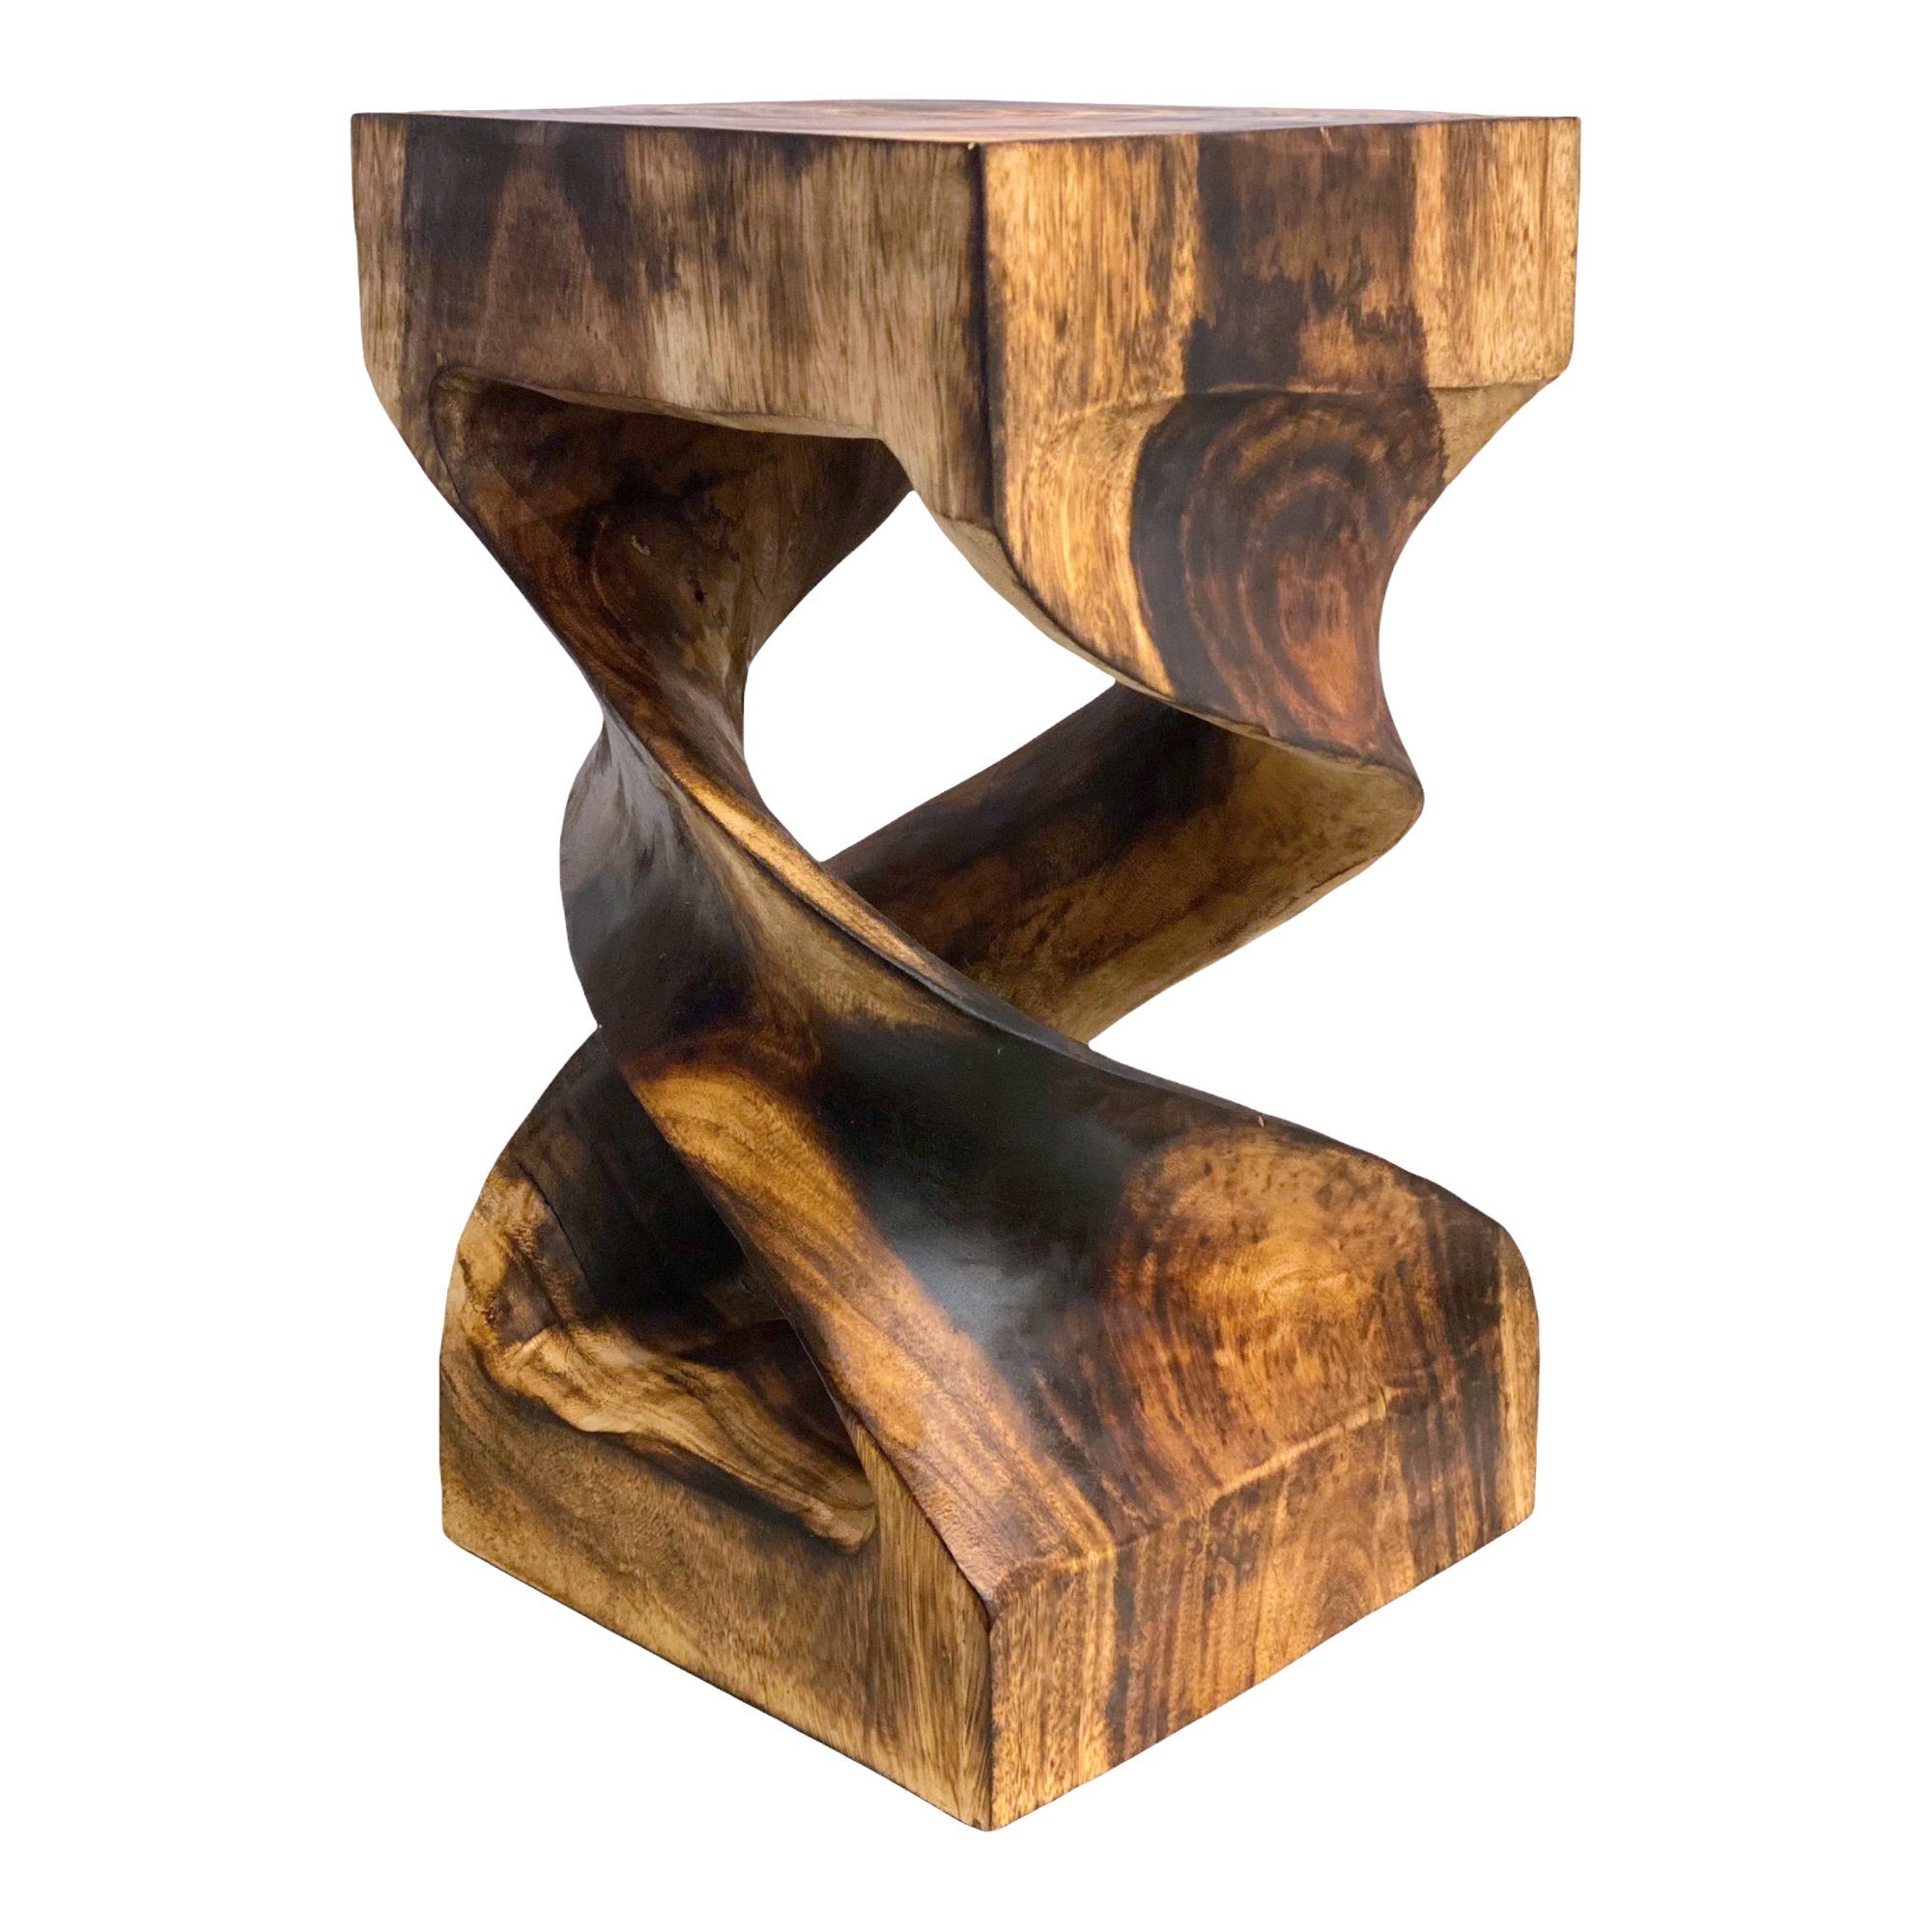 FaHome Beistelltisch Holz: Flambierter, Handgefertigter & Hochwertiger Holzhocker, Massiv (50x28x28)